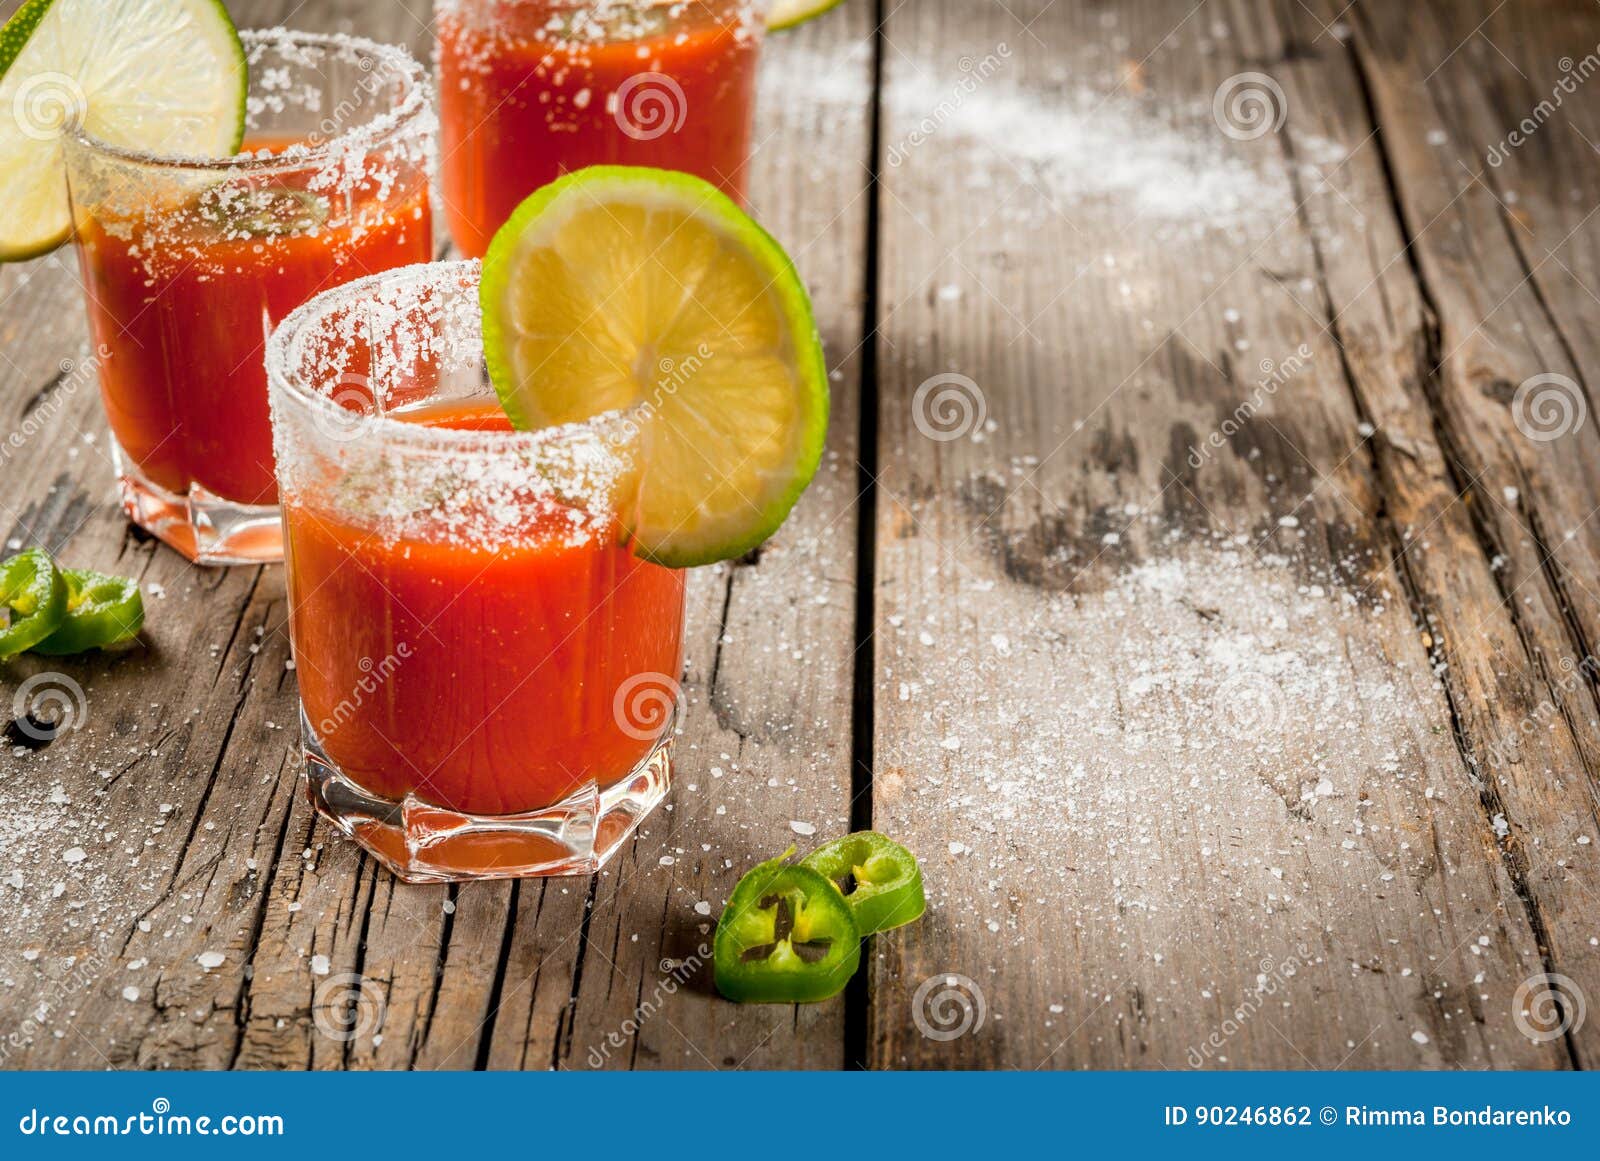 五颜六色的传统墨西哥人饮料 库存图片. 图片 包括有 经典, 柠檬, 鸡尾酒, 液体, 绿色, 背包, 新鲜 - 78100041